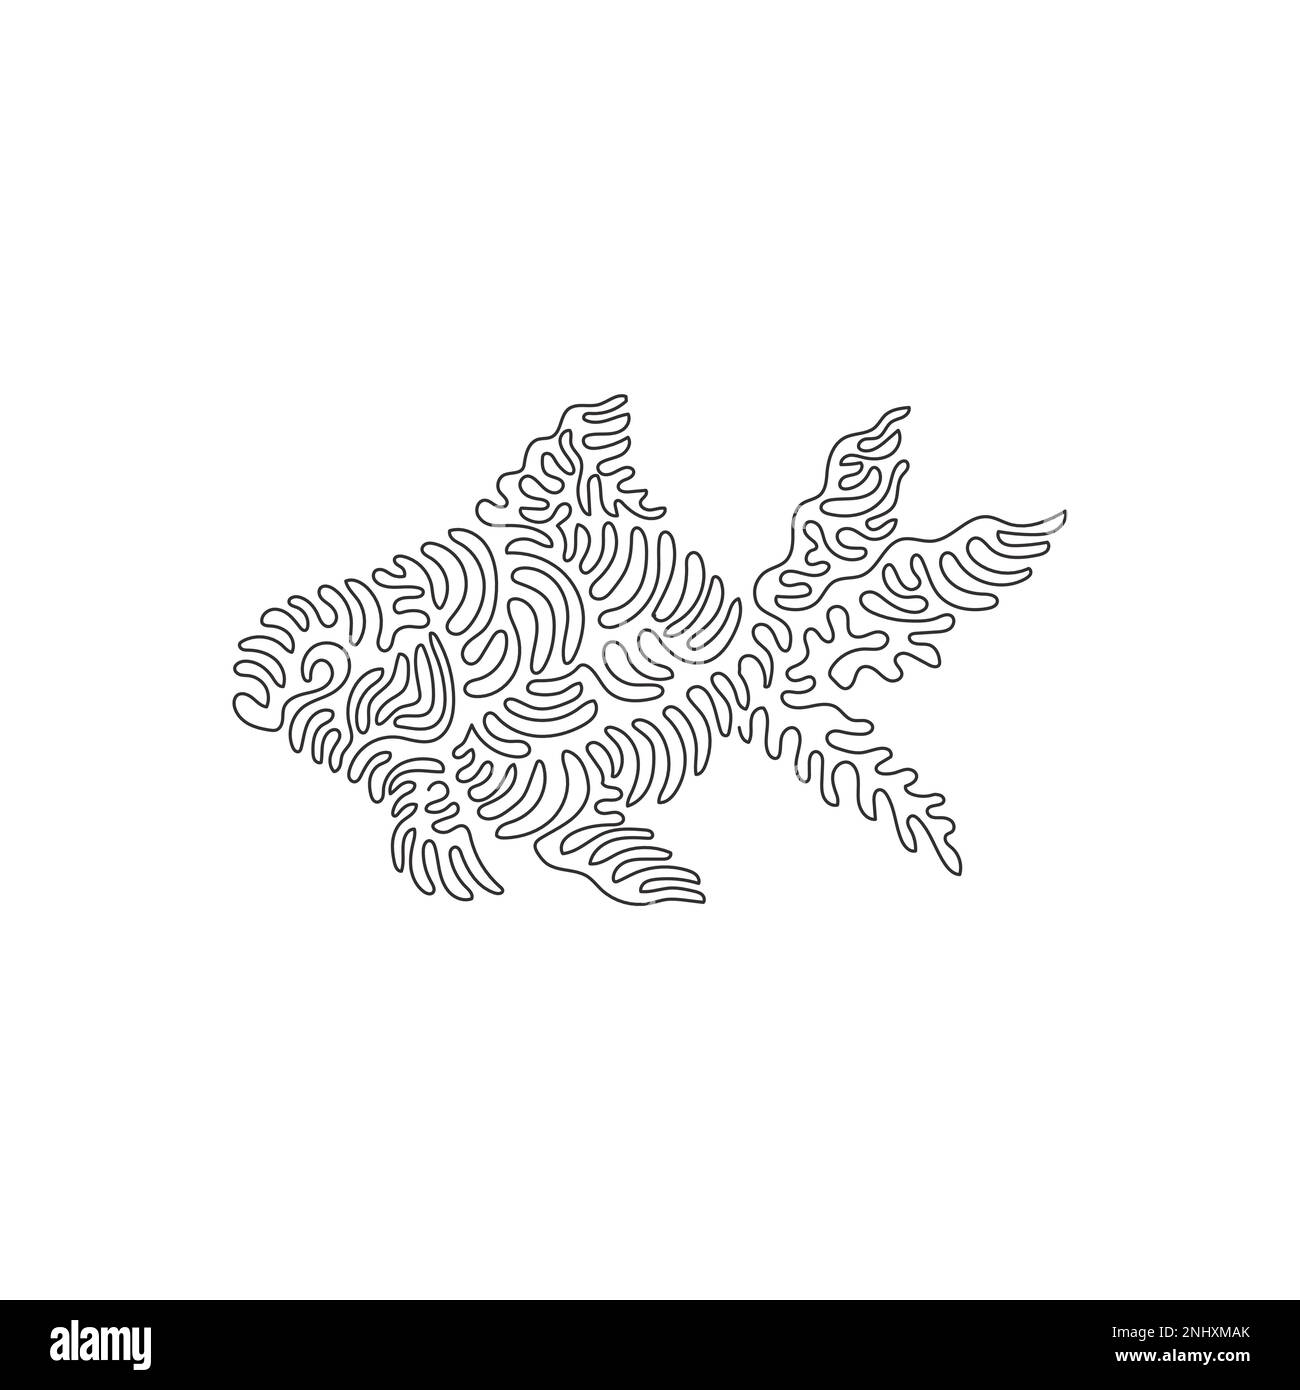 Un seul dessin d'une ligne de belle art abstrait de poisson doré Ligne continue dessin graphique dessin illustration vectorielle de la configuration des nageoires mignonnes de poissons rouges Illustration de Vecteur